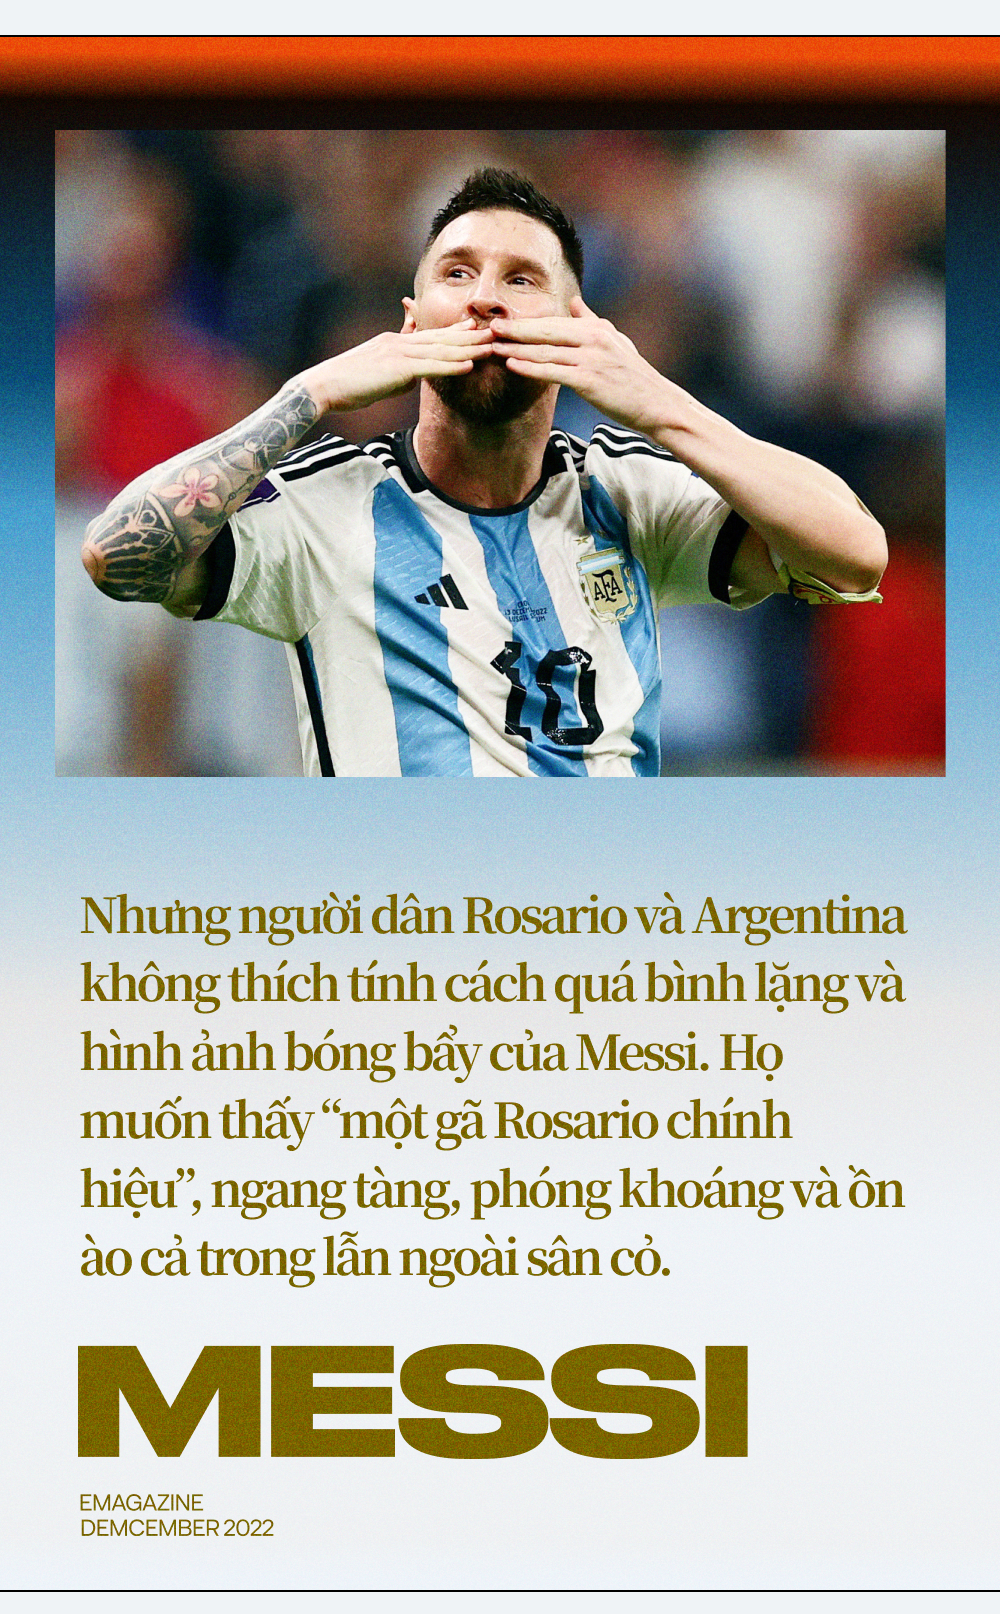 Lionel Messi là một trong những người hùng của đội tuyển Argentina trong lịch sử bóng đá. Hãy xem hình ảnh của anh ta để chiêm ngưỡng kỹ thuật điêu luyện của một trong những cầu thủ xuất sắc nhất thế giới.